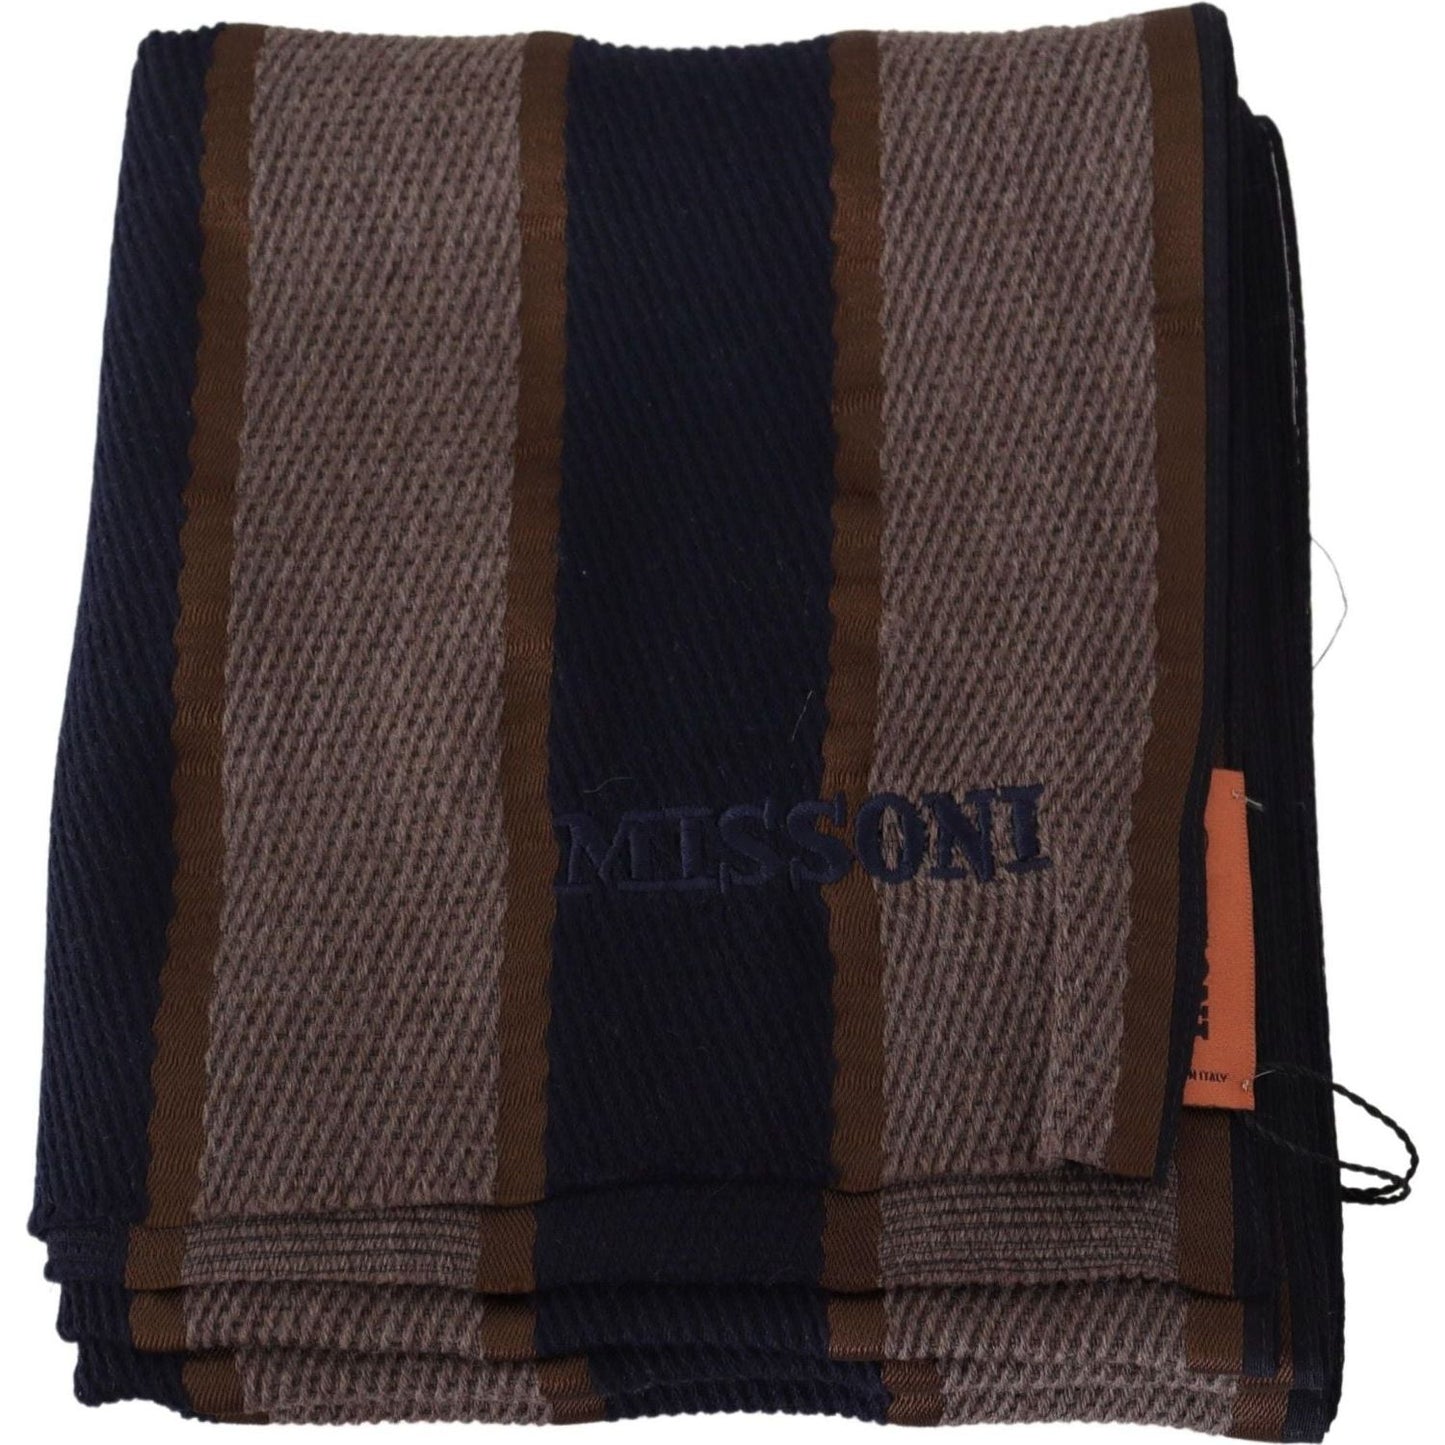 Missoni Elegant Striped Wool Scarf brown-wool-striped-unisex-neck-wrap-shawl-scarf